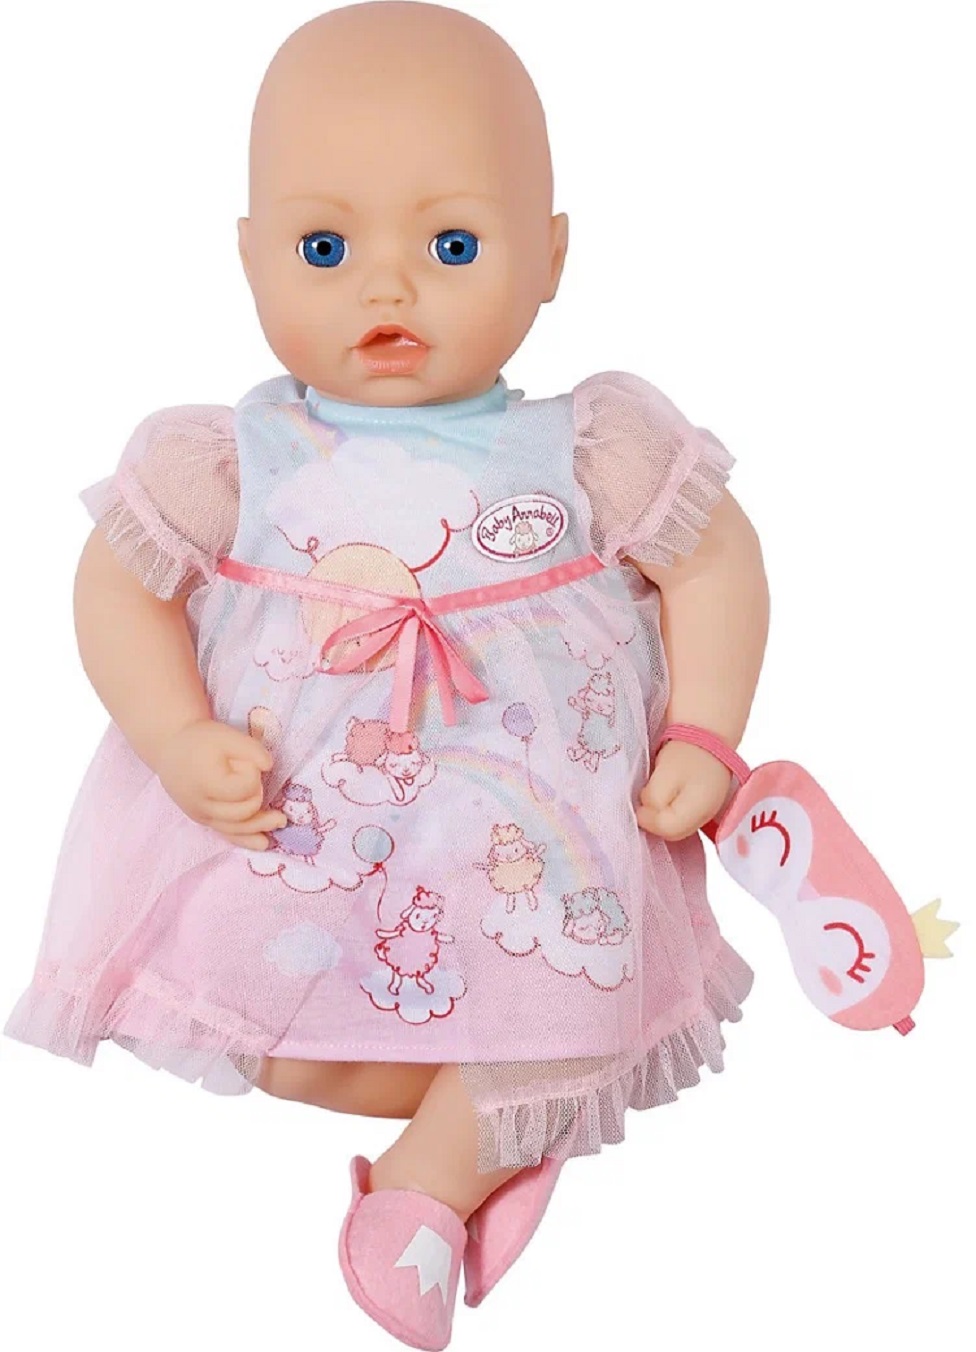 Одежда Zapf Creation Baby Annabell 705-537 Бэби Аннабель для сна "Сладких снов", 43 см